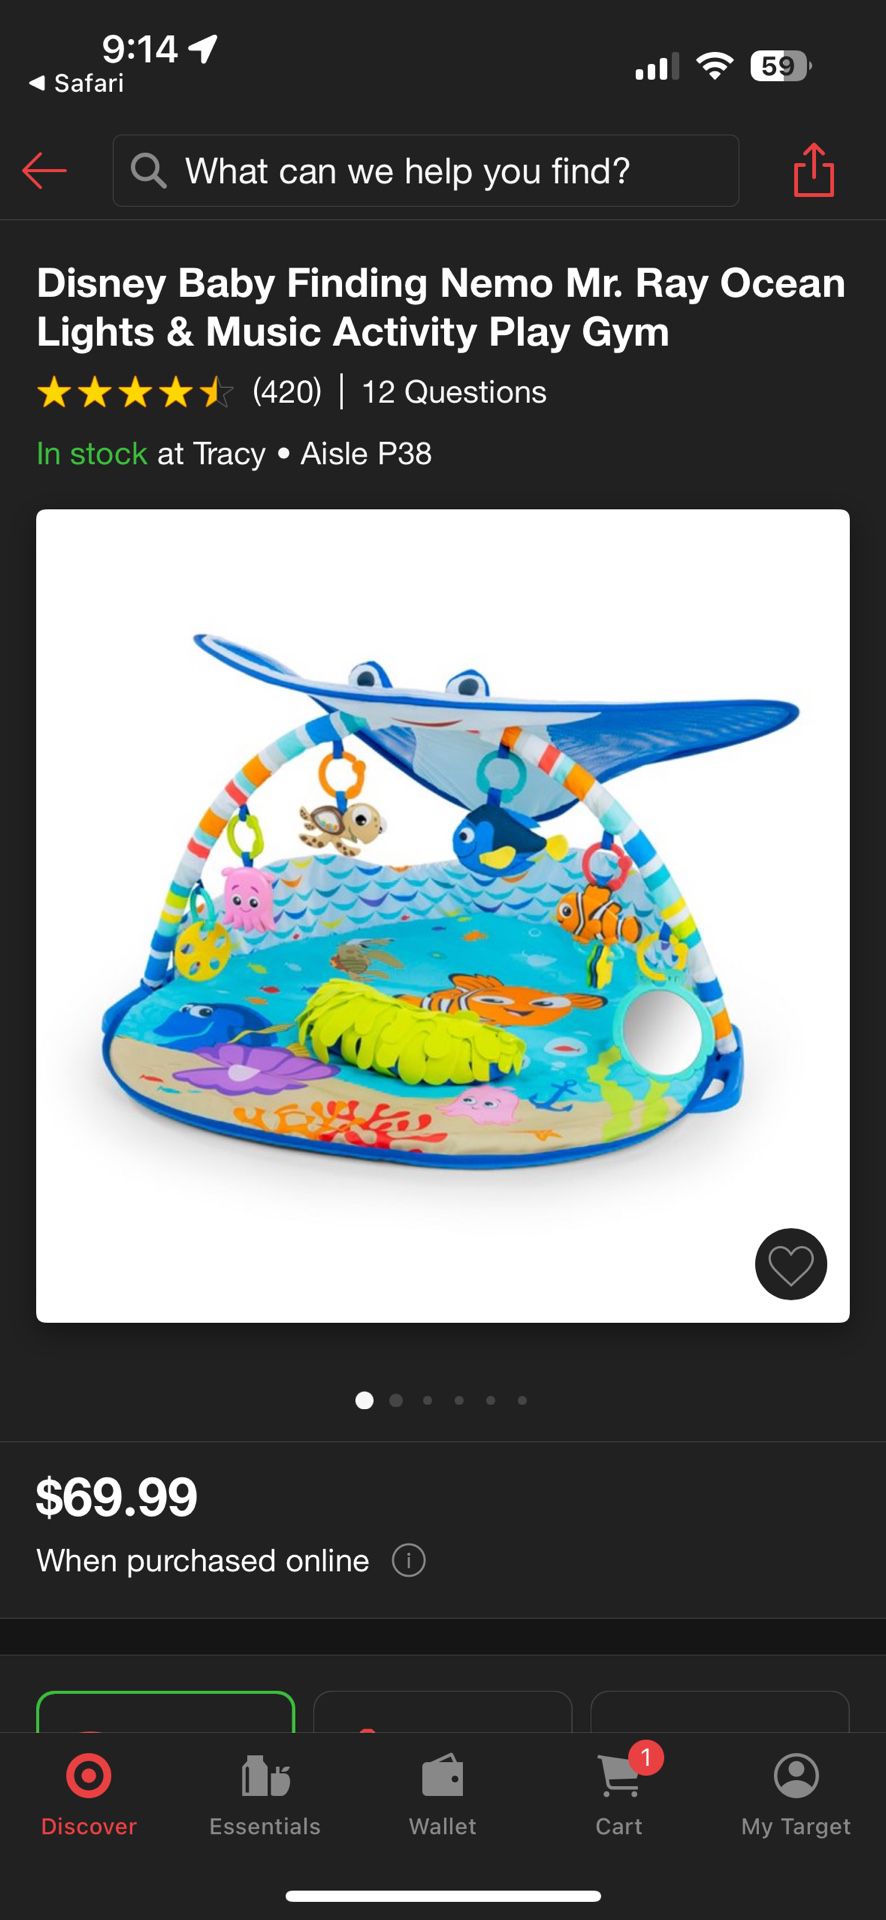 Brand New Finding Nemo Baby Playmat 20 Bucks